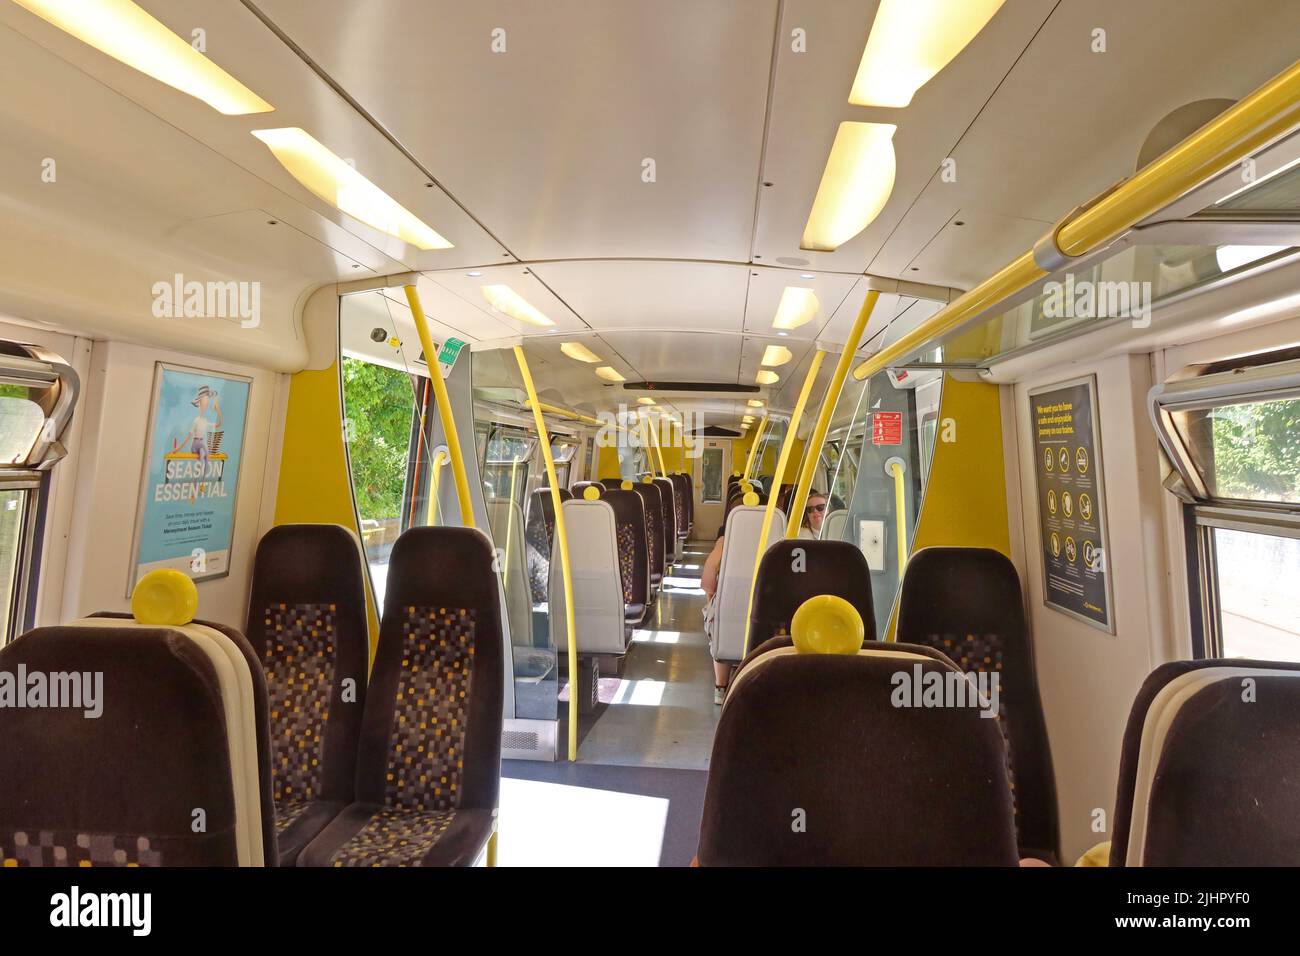 Train Merseyrail vide, livrée jaune, ligne de métro Southport, Liverpool South Parkway, Merseyside, Angleterre, ROYAUME-UNI Banque D'Images